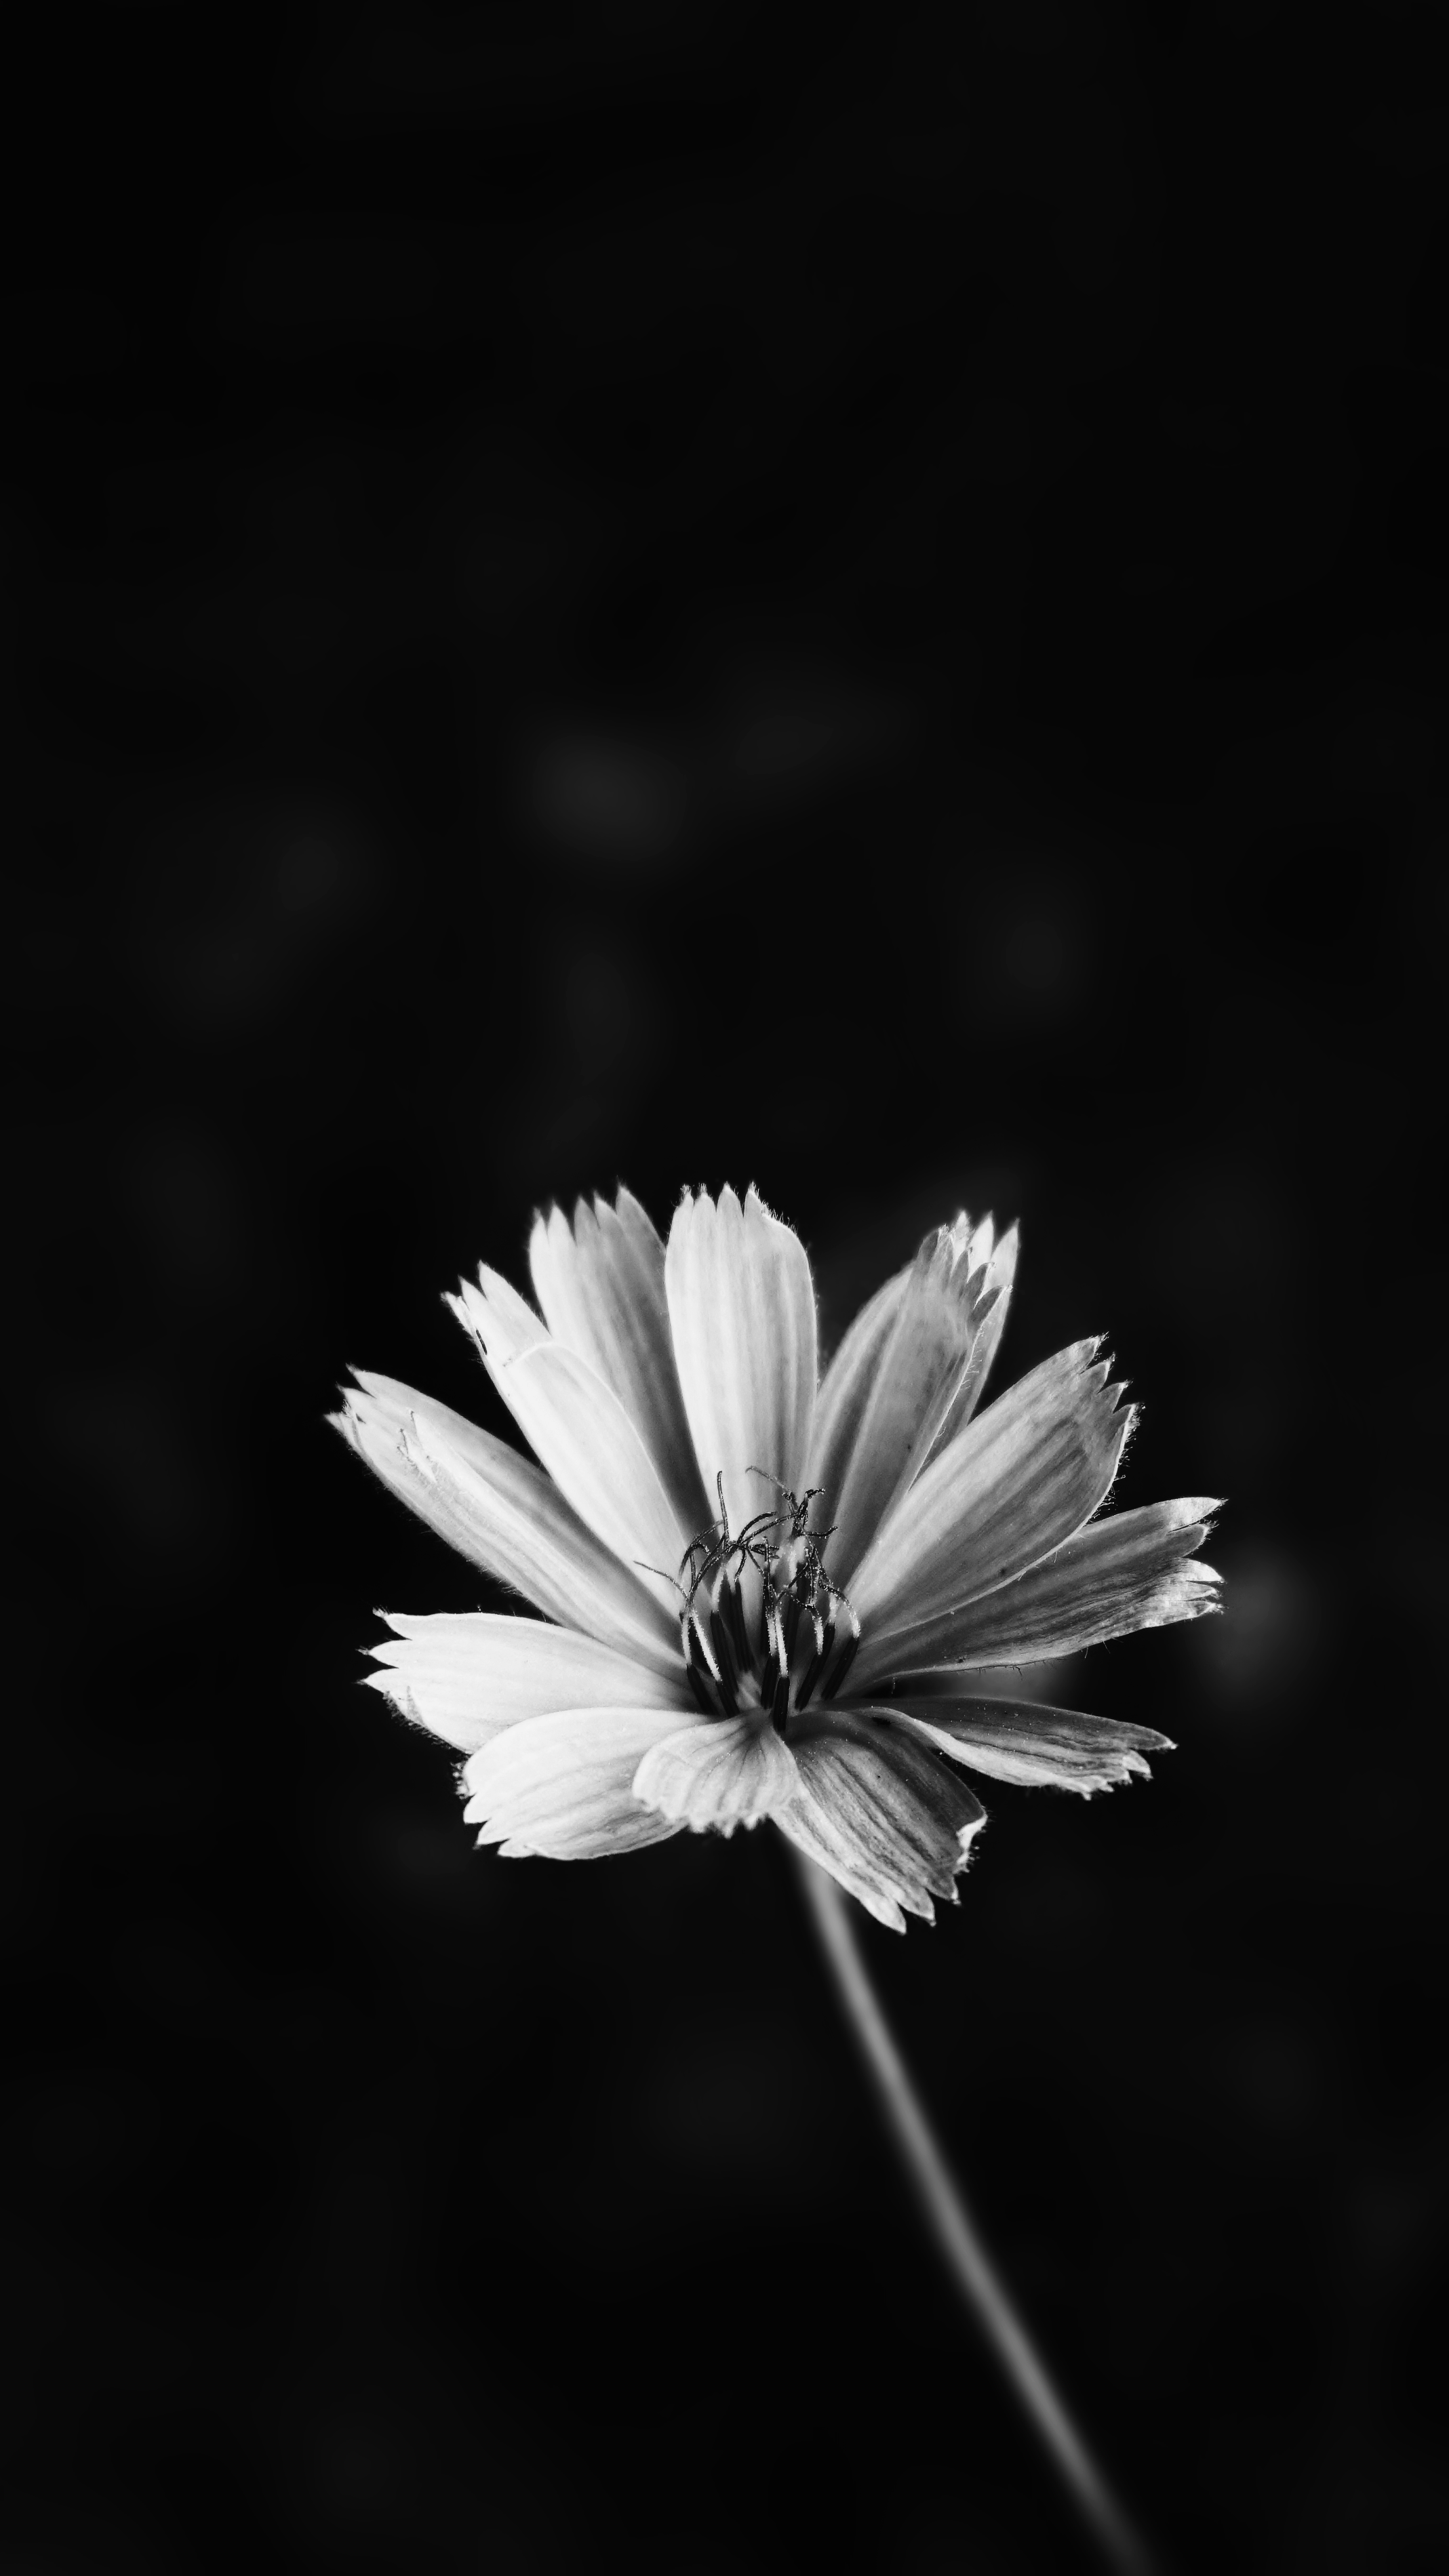 foto wallpaper,petalo,fotografia in bianco e nero,bianco e nero,fiore,natura